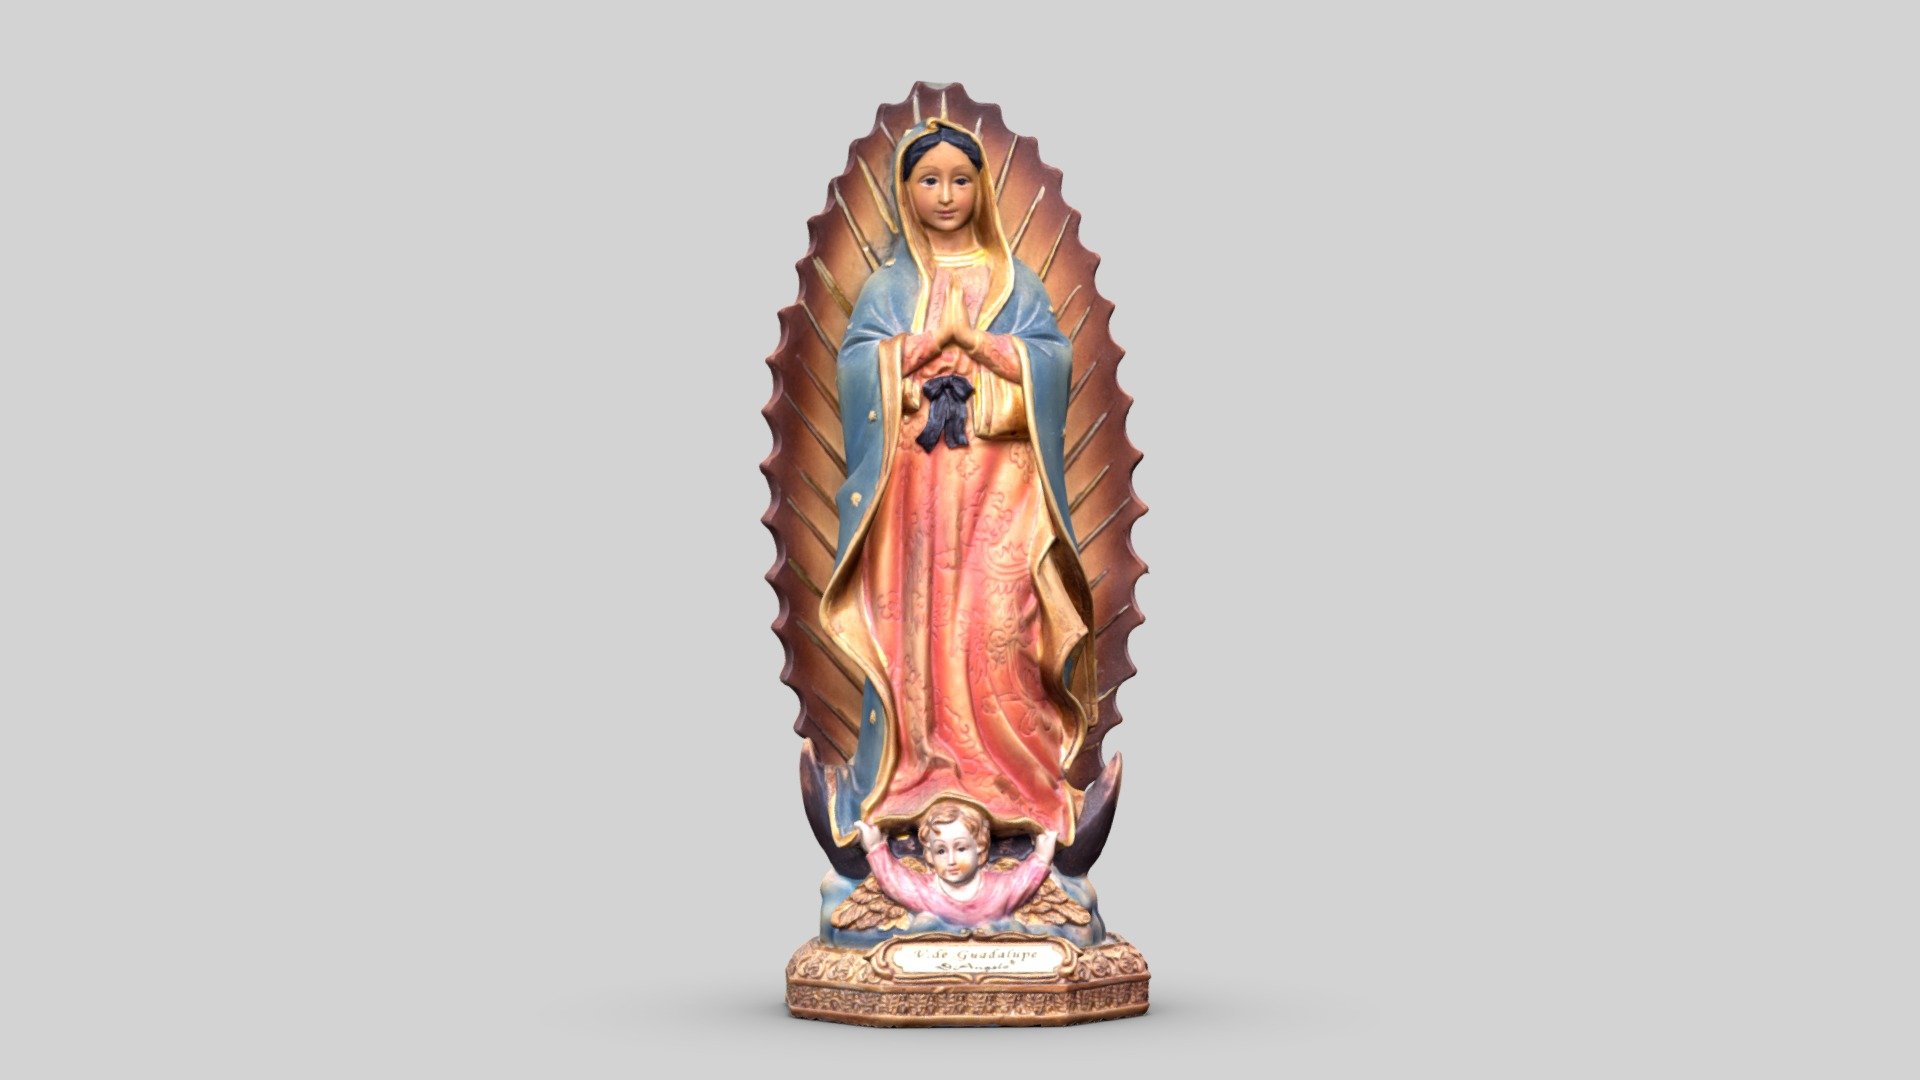 Notre-Dame de Guadalupe (en espagnol Nuestra Señora de Guadalupe) ou Vierge de Guadalupe (en espagnol Virgen de Guadalupe) est, au Mexique, le nom donné à la Vierge Marie qui serait apparue, selon la tradition, à un indigène du Mexique, Juan Diego, en 1531, ainsi qu'à l'image acheiropoïète qui lui est associée (l'image de la Vierge sur la tilma). La Vierge de Guadalupe est une figure du catholicisme en Amérique latine ; sa fête, le 12 décembre rassemble toutes les nations américaines. À cette occasion, de nombreuses célébrations sont organisées dans le monde entier.

Nuestra Señora de Guadalupe, conocida comúnmente como la Virgen de Guadalupe, ​ es una aparición mariana de la Iglesia católica de origen mexicano, cuya imagen tiene su principal centro de culto en la Basílica de Guadalupe, ubicada en las faldas del cerro del Tepeyac, en el norte de la Ciudad de México 3d model